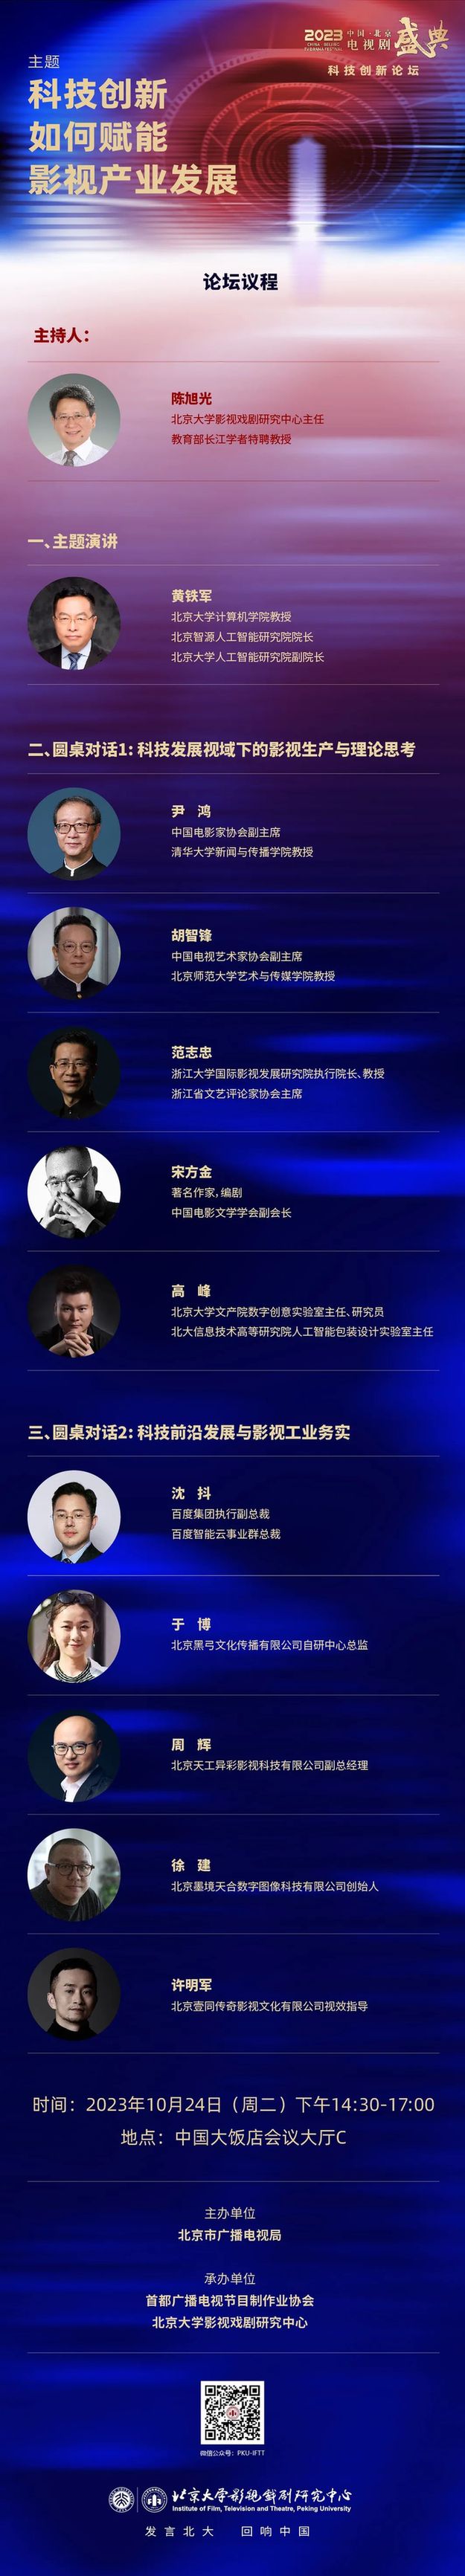 预见·科技创新论坛将亮相2023中国·北京电视剧盛典